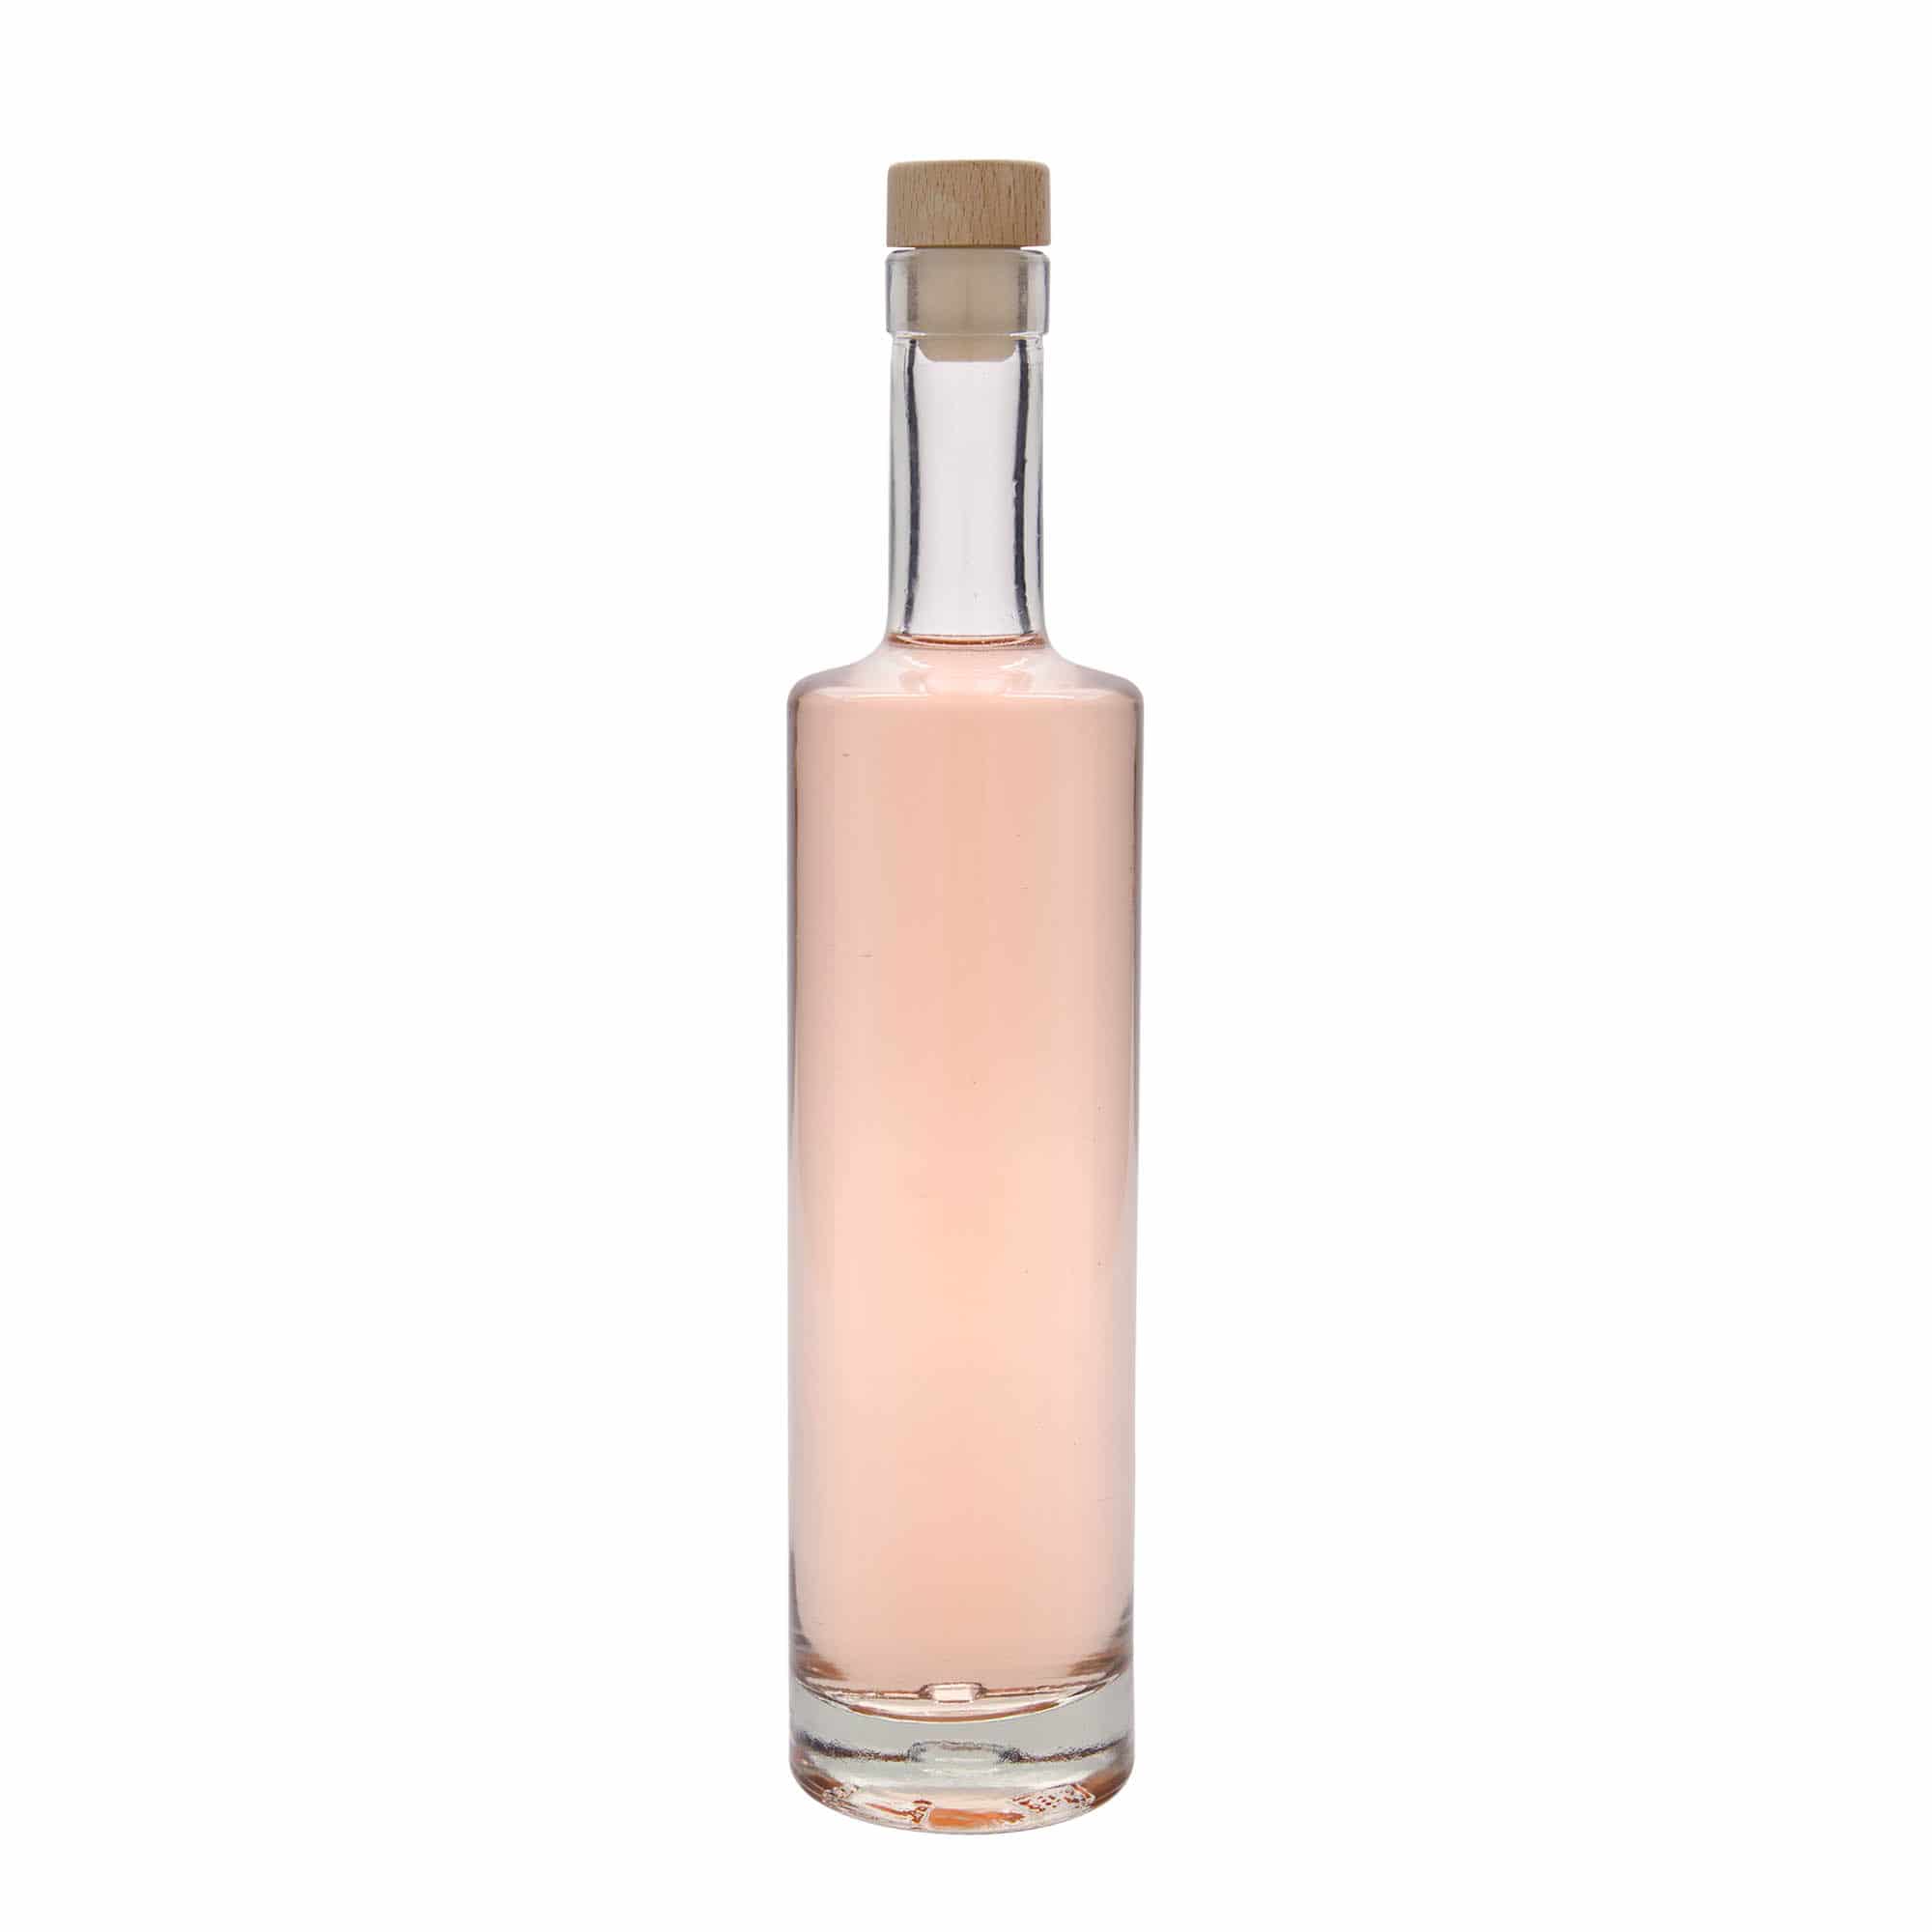 500 ml glass bottle 'Centurio', closure: cork